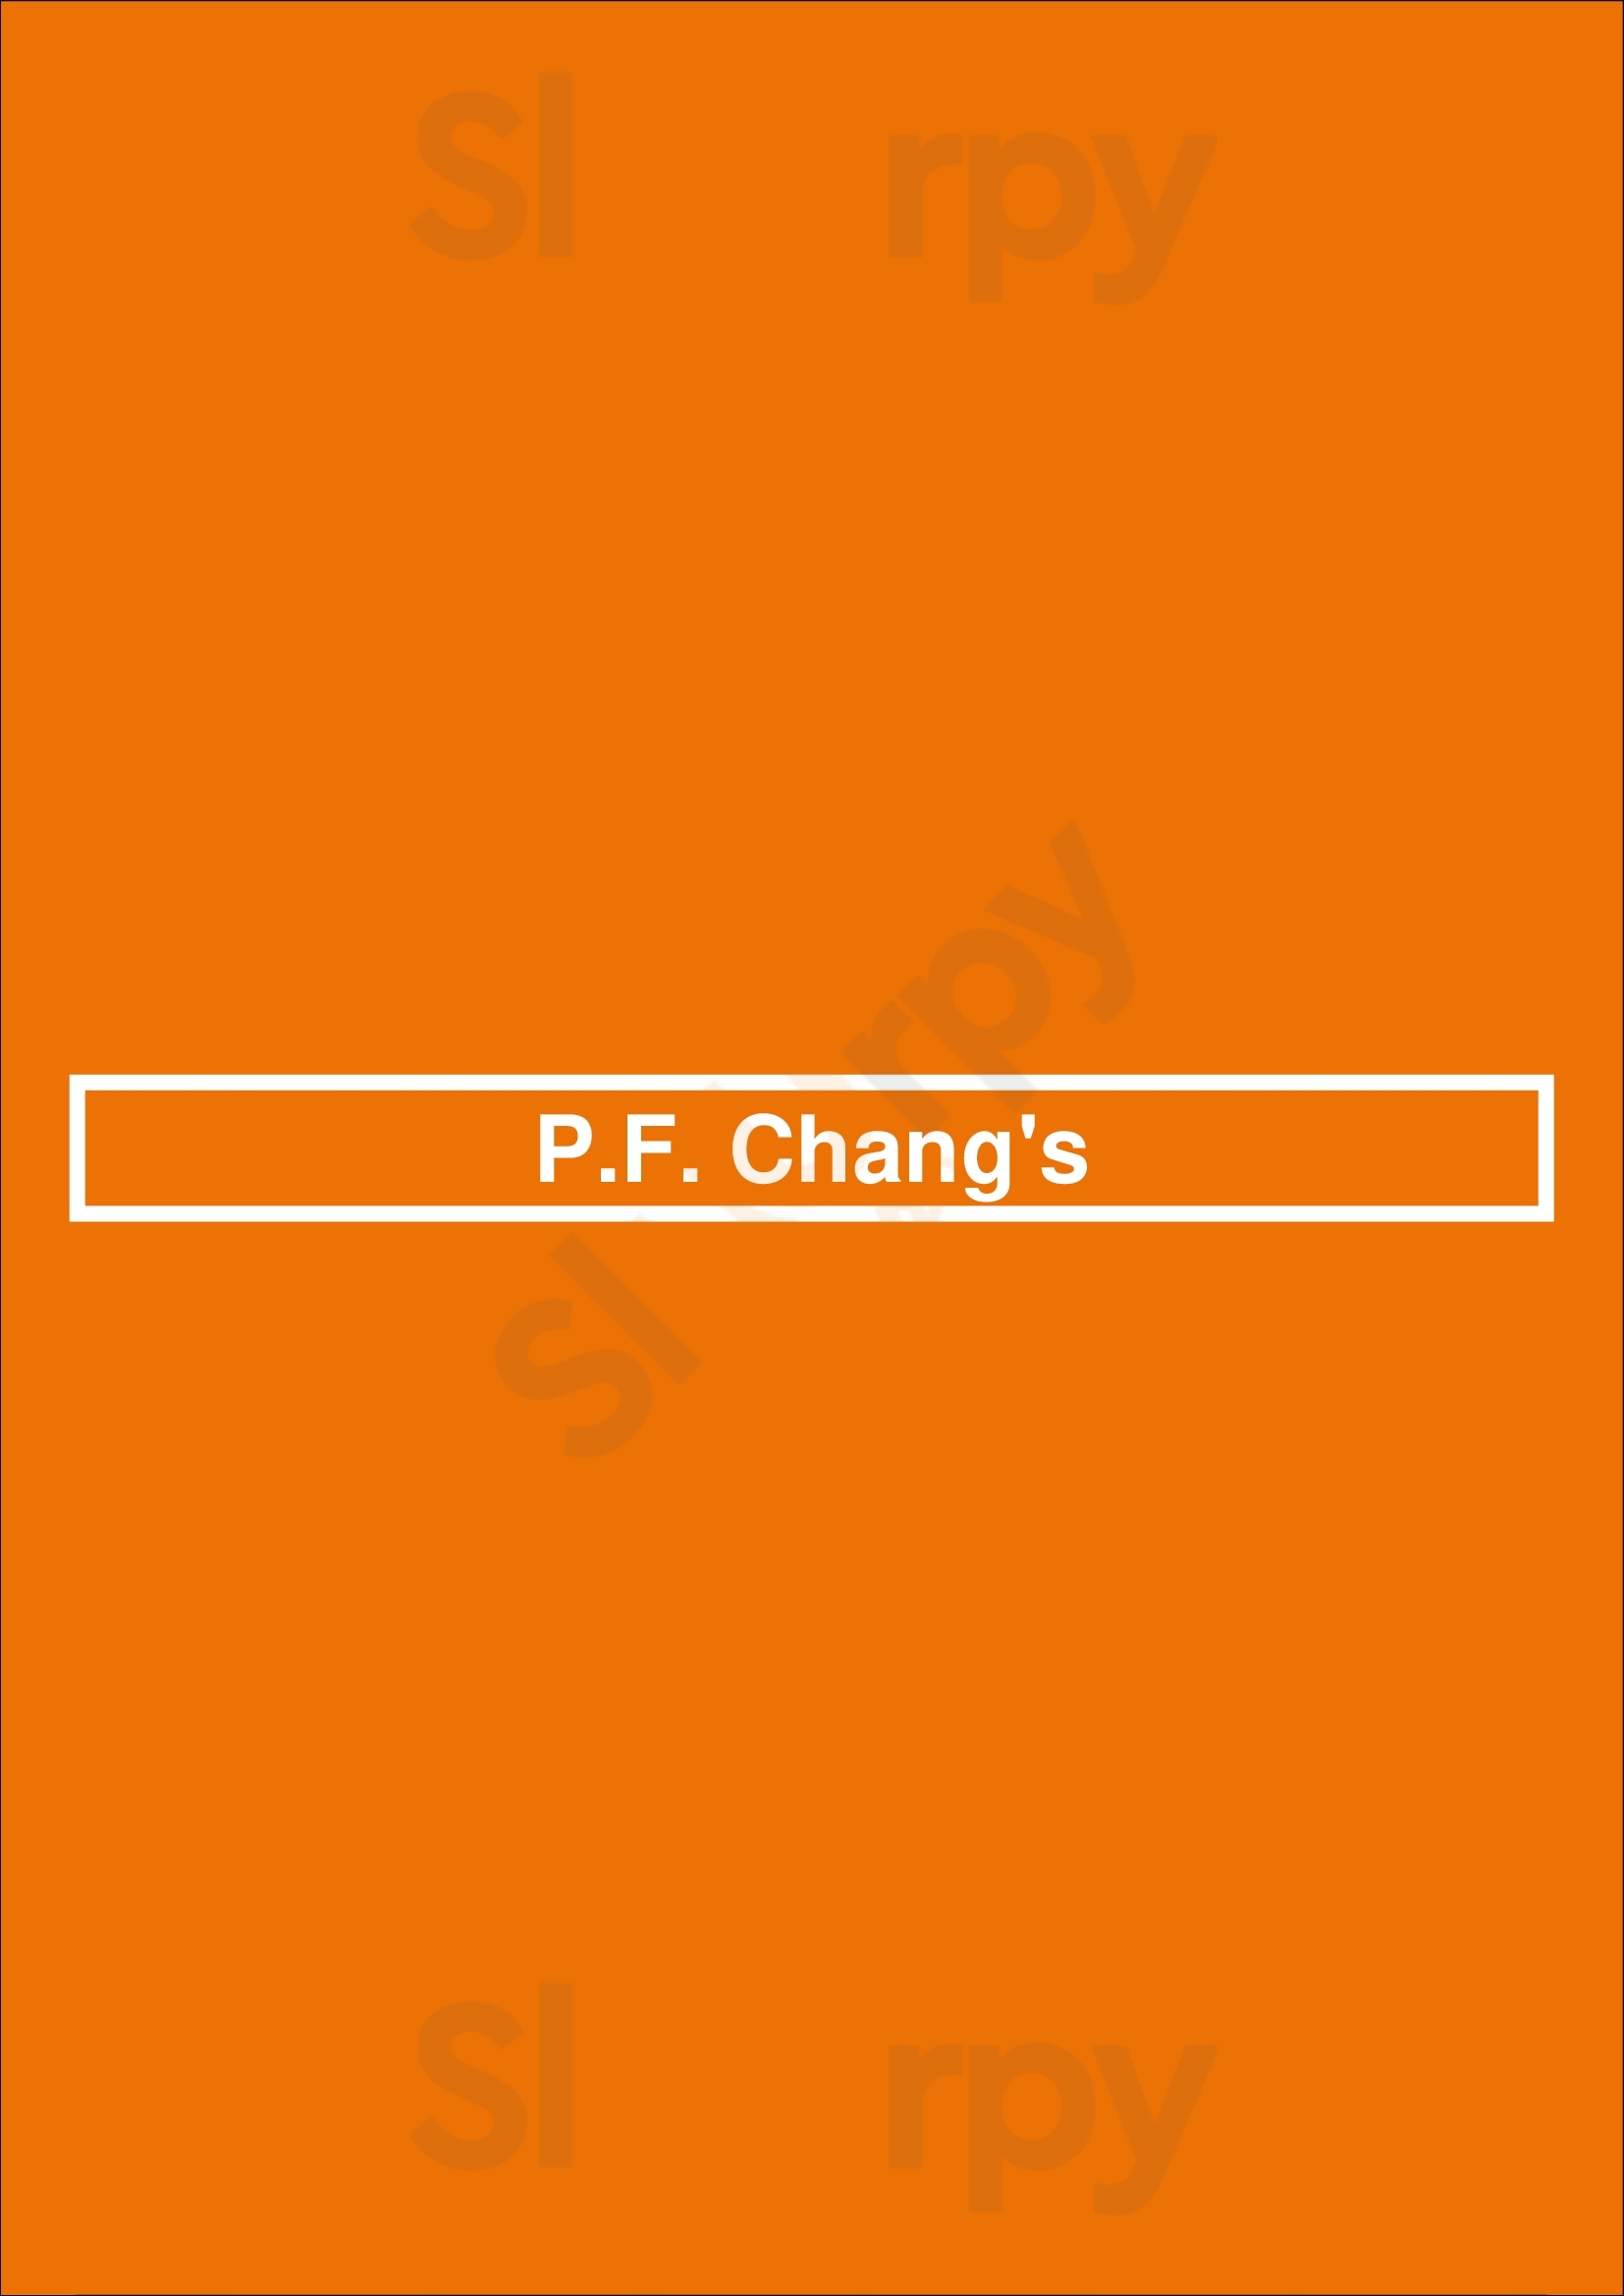 P.f. Chang's Miami Menu - 1